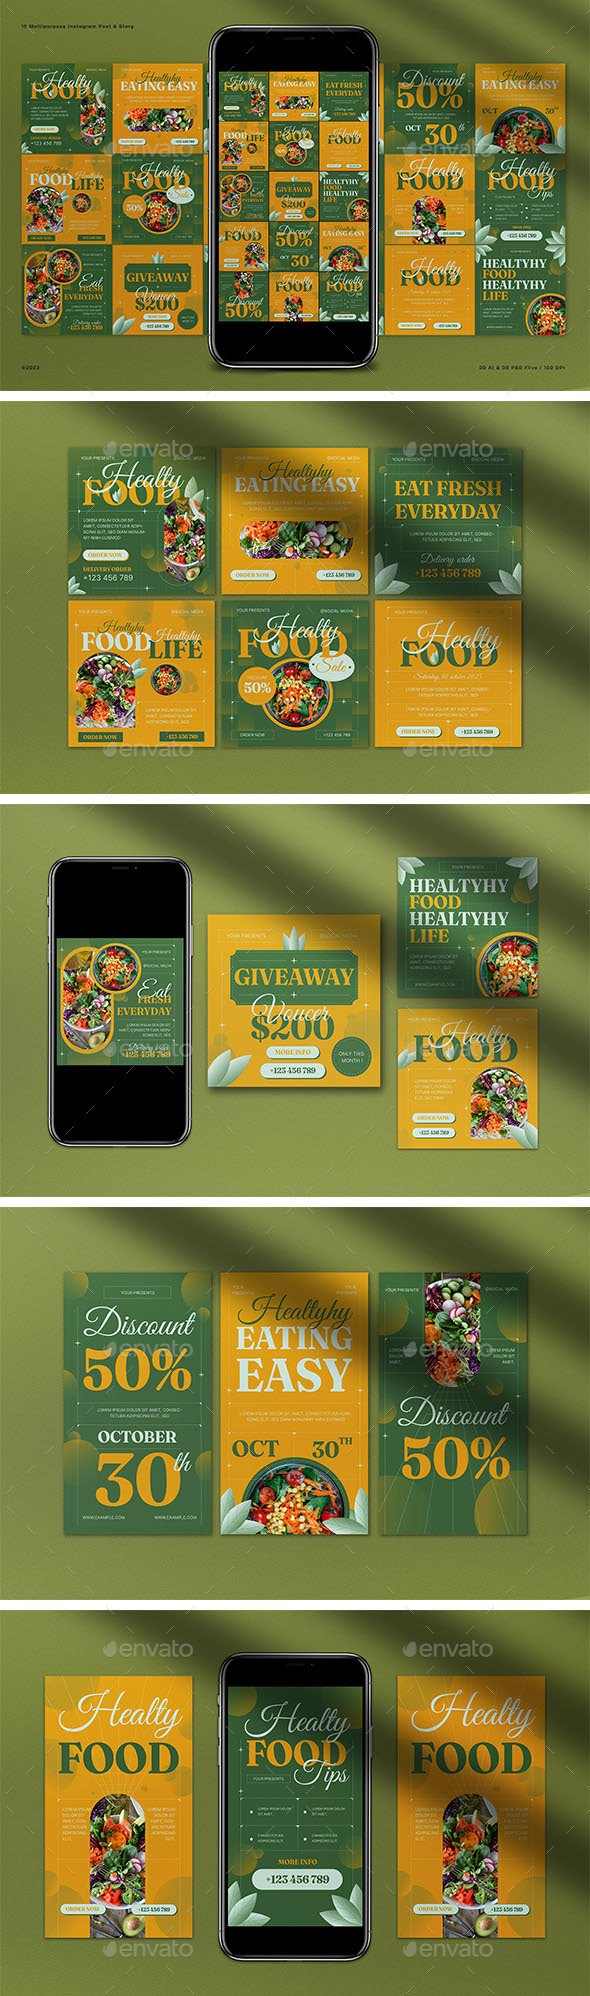 Green Gradient Healthy Food Instagram Pack